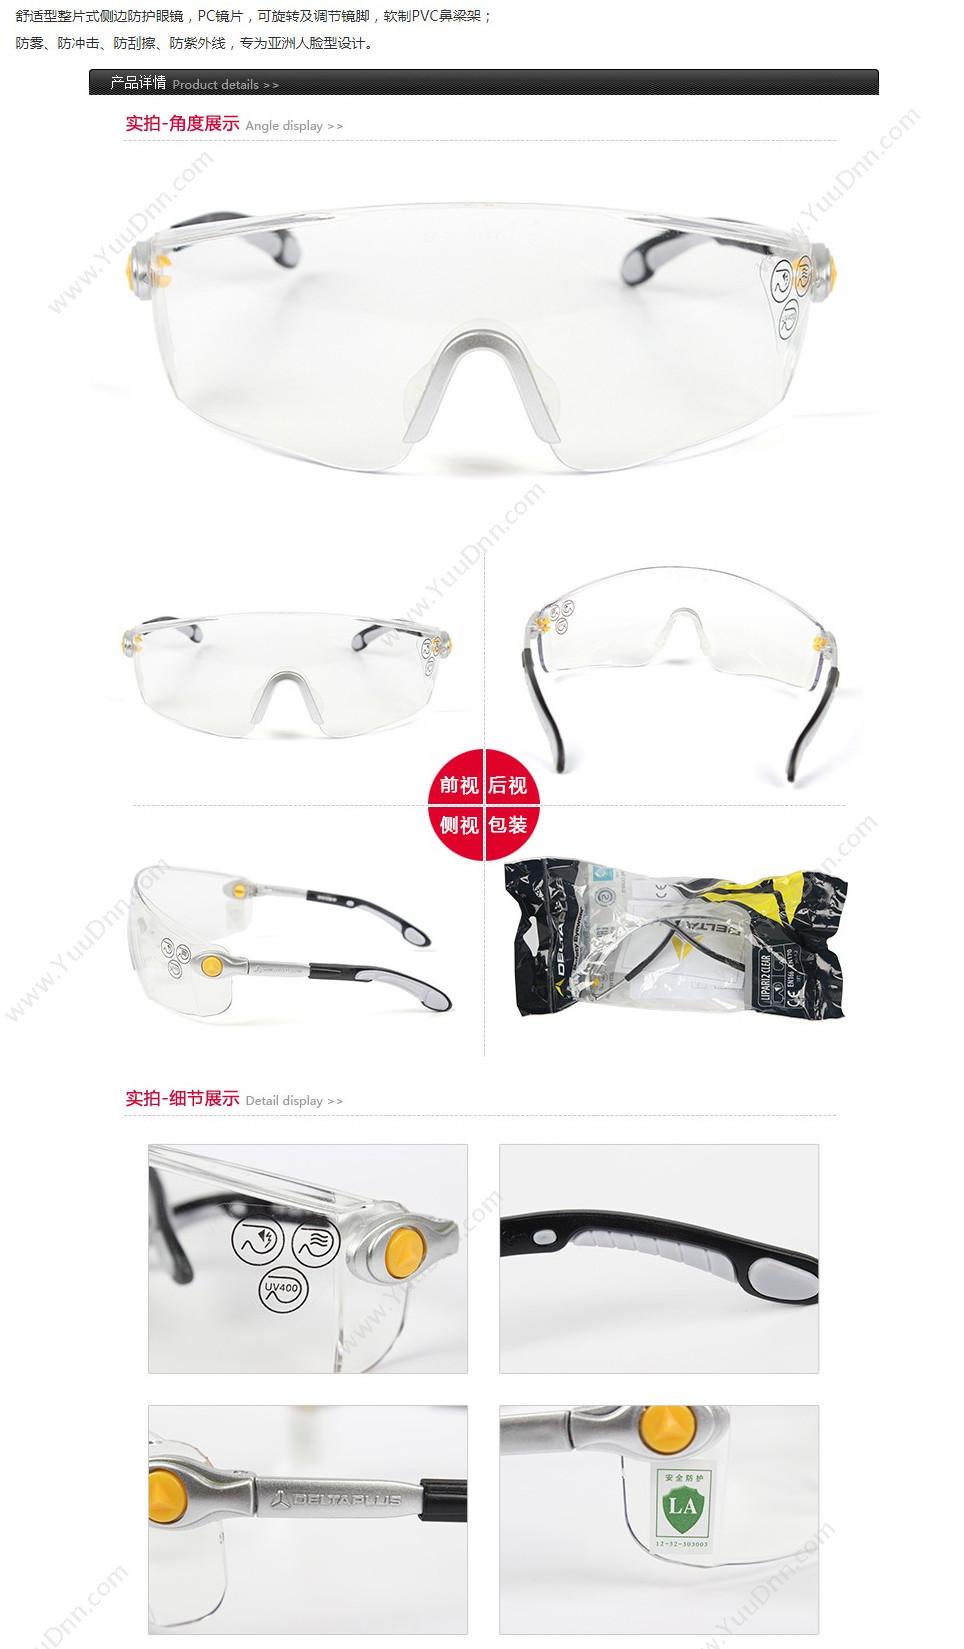 代尔塔 Delta 101115 舒适型安全眼镜透明防雾 LIPARI2 CLEAR 透明白色 10个/盒 防雾，防刮擦 防护眼镜